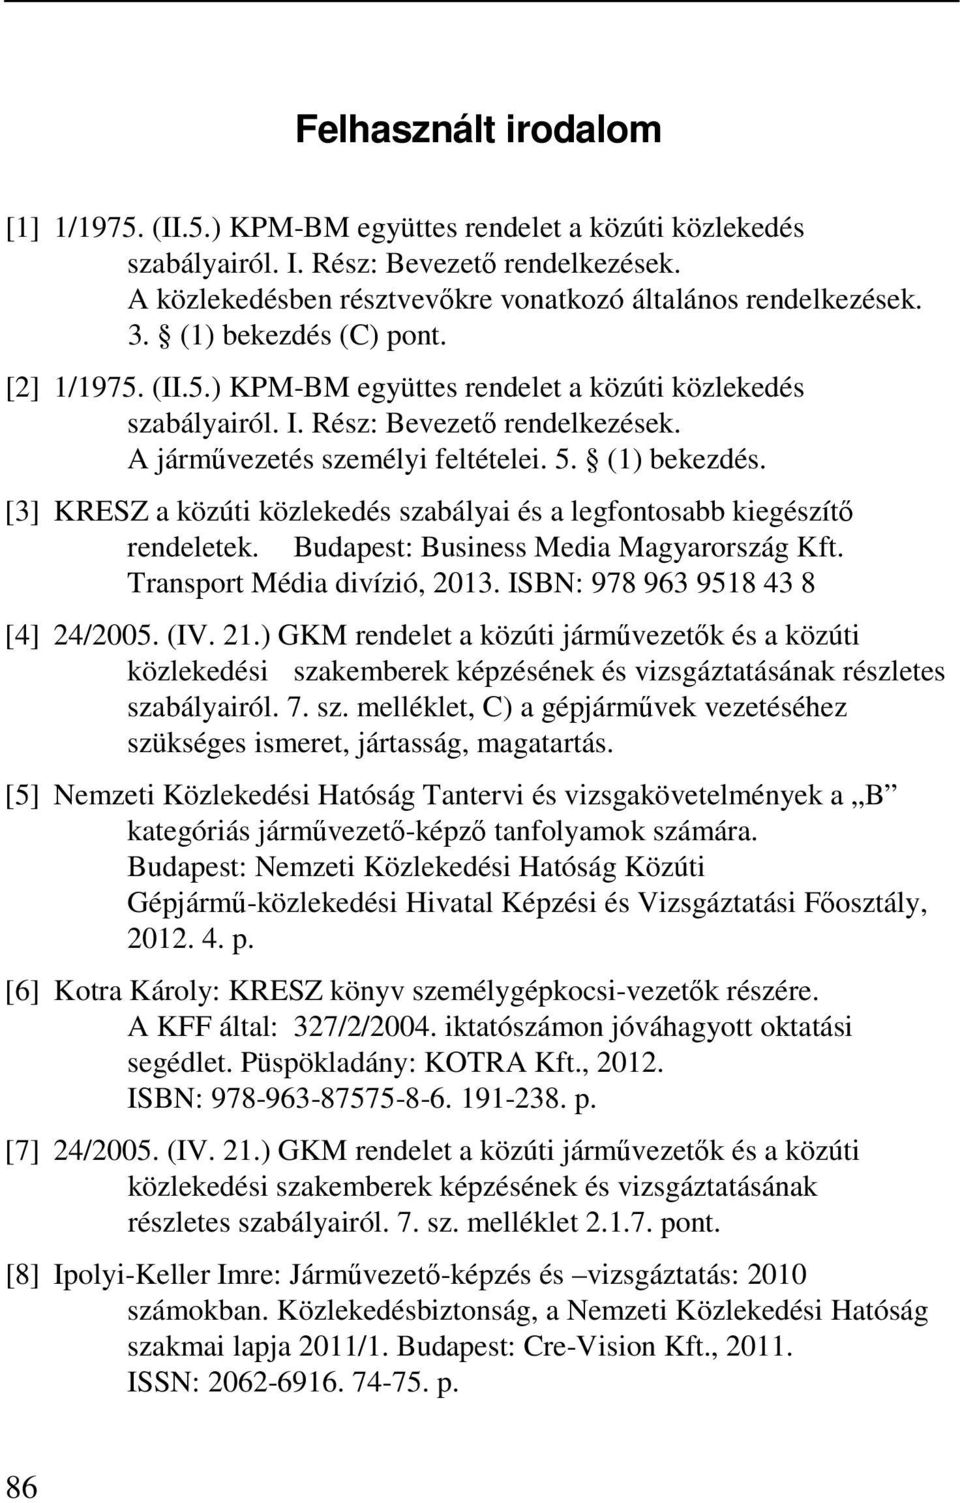 [3] KRESZ a közúti közlekedés szabályai és a legfontosabb kiegészítő rendeletek. Budapest: Business Media Magyarország Kft. Transport Média divízió, 2013. ISBN: 978 963 9518 43 8 [4] 24/2005. (IV. 21.